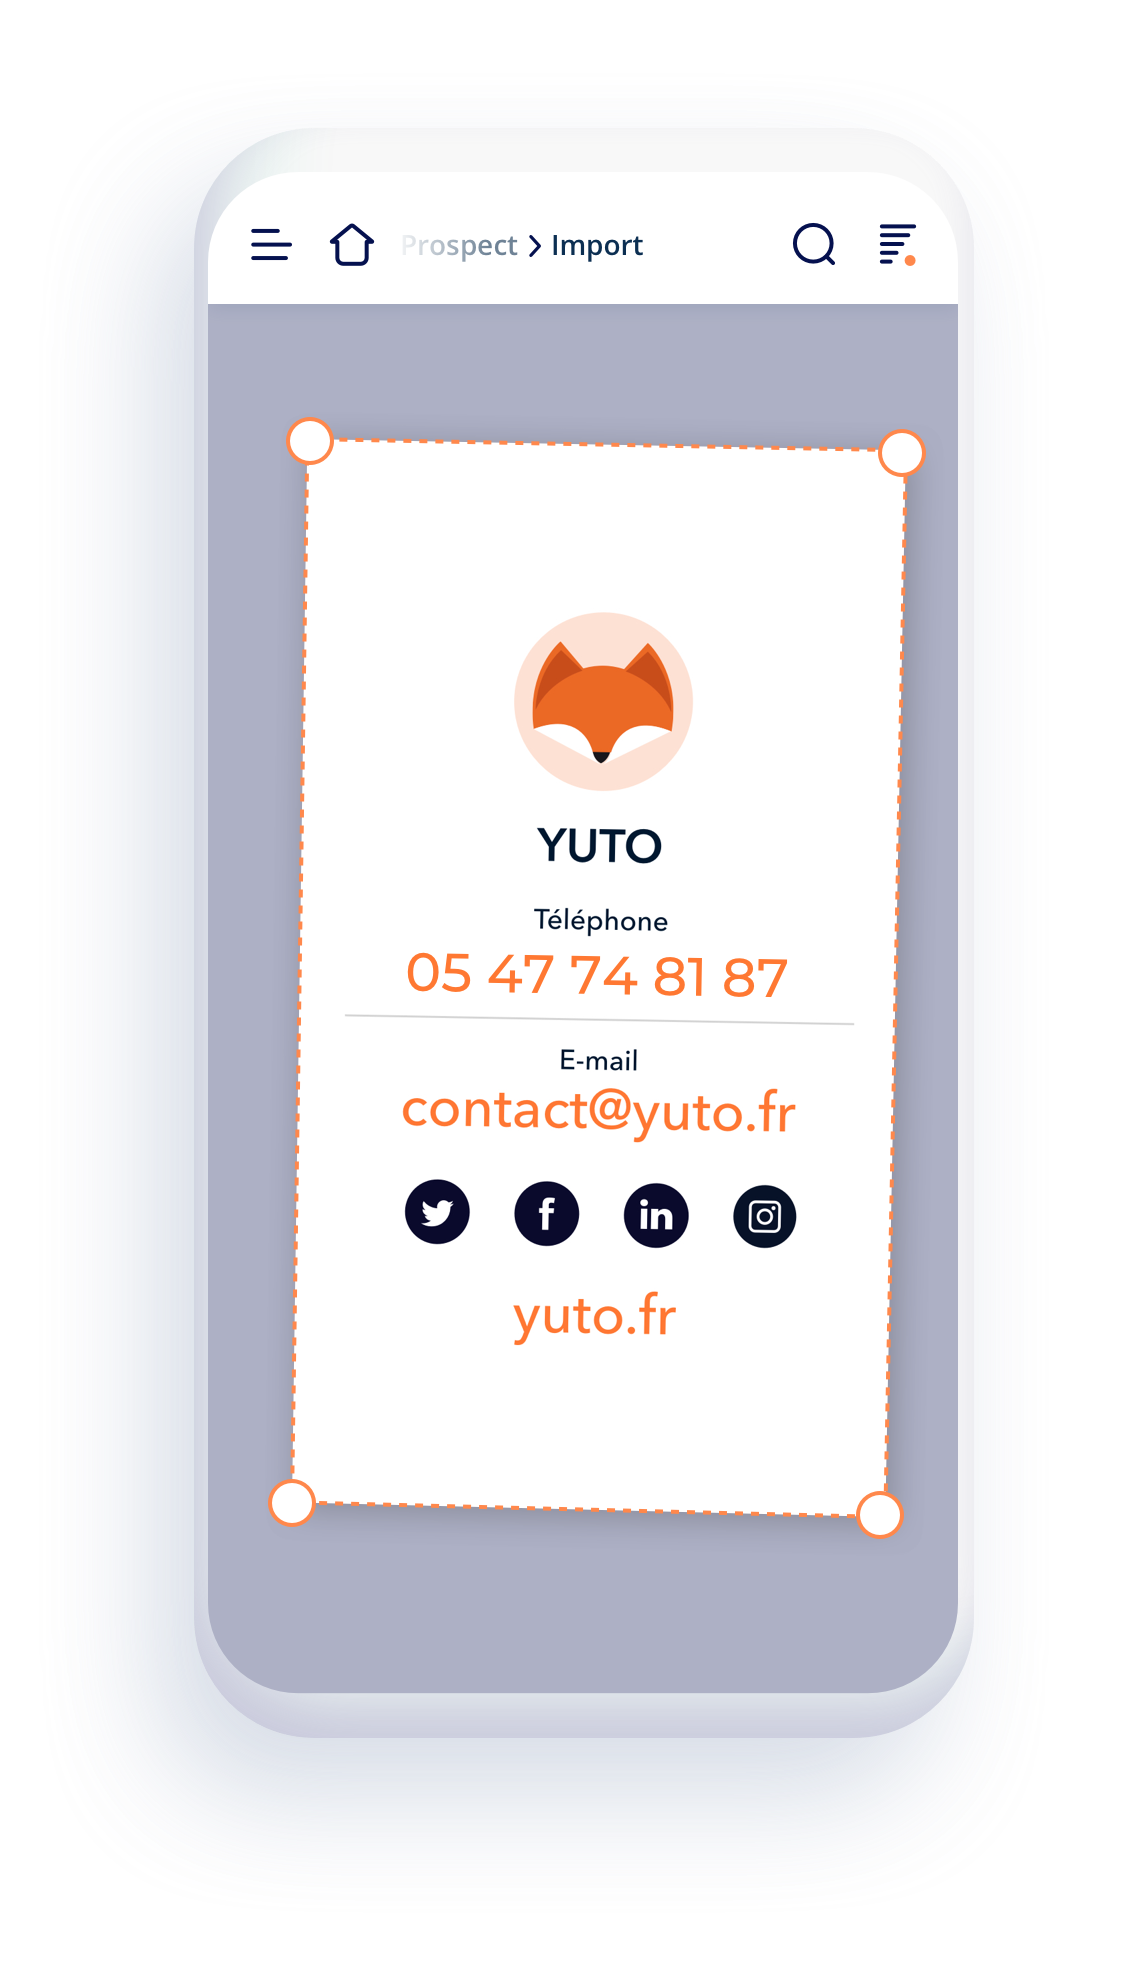 Yuto - Lecteur intelligent des cartes de visite